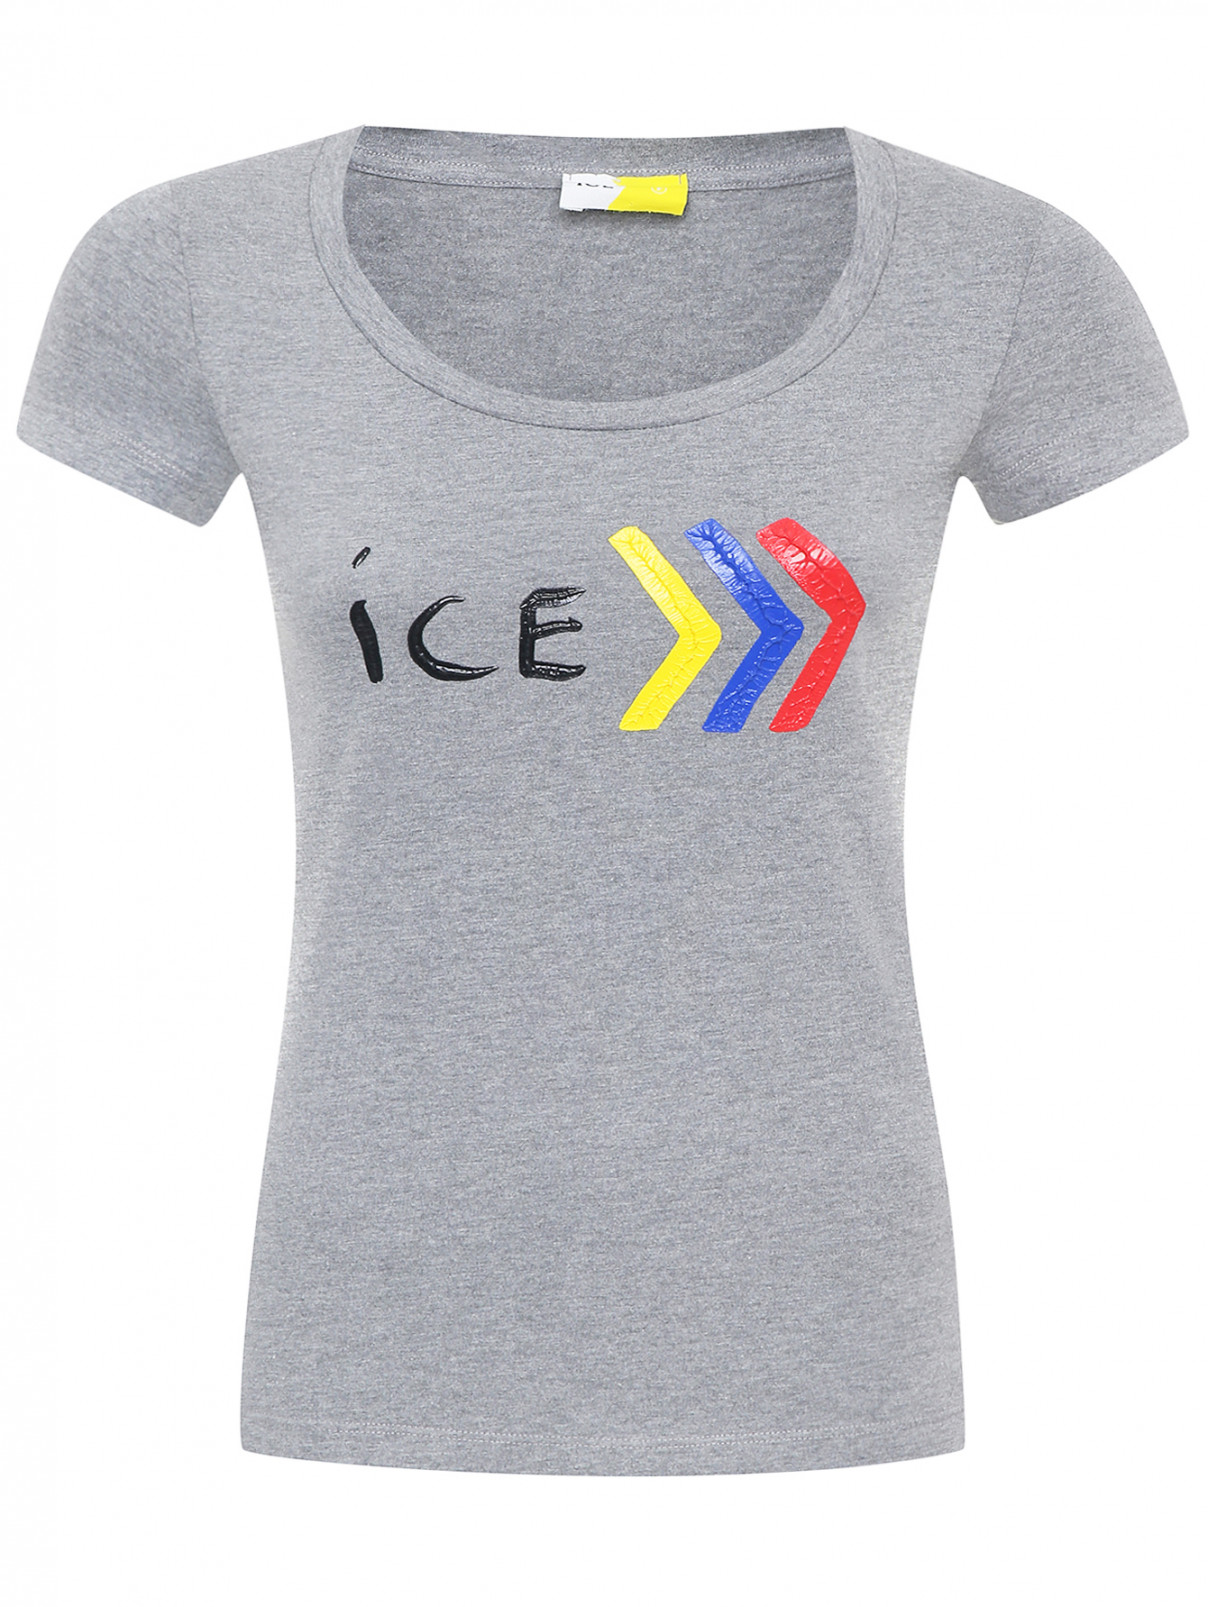 Трикотажная футболка с принтом Ice Play  –  Общий вид  – Цвет:  Серый